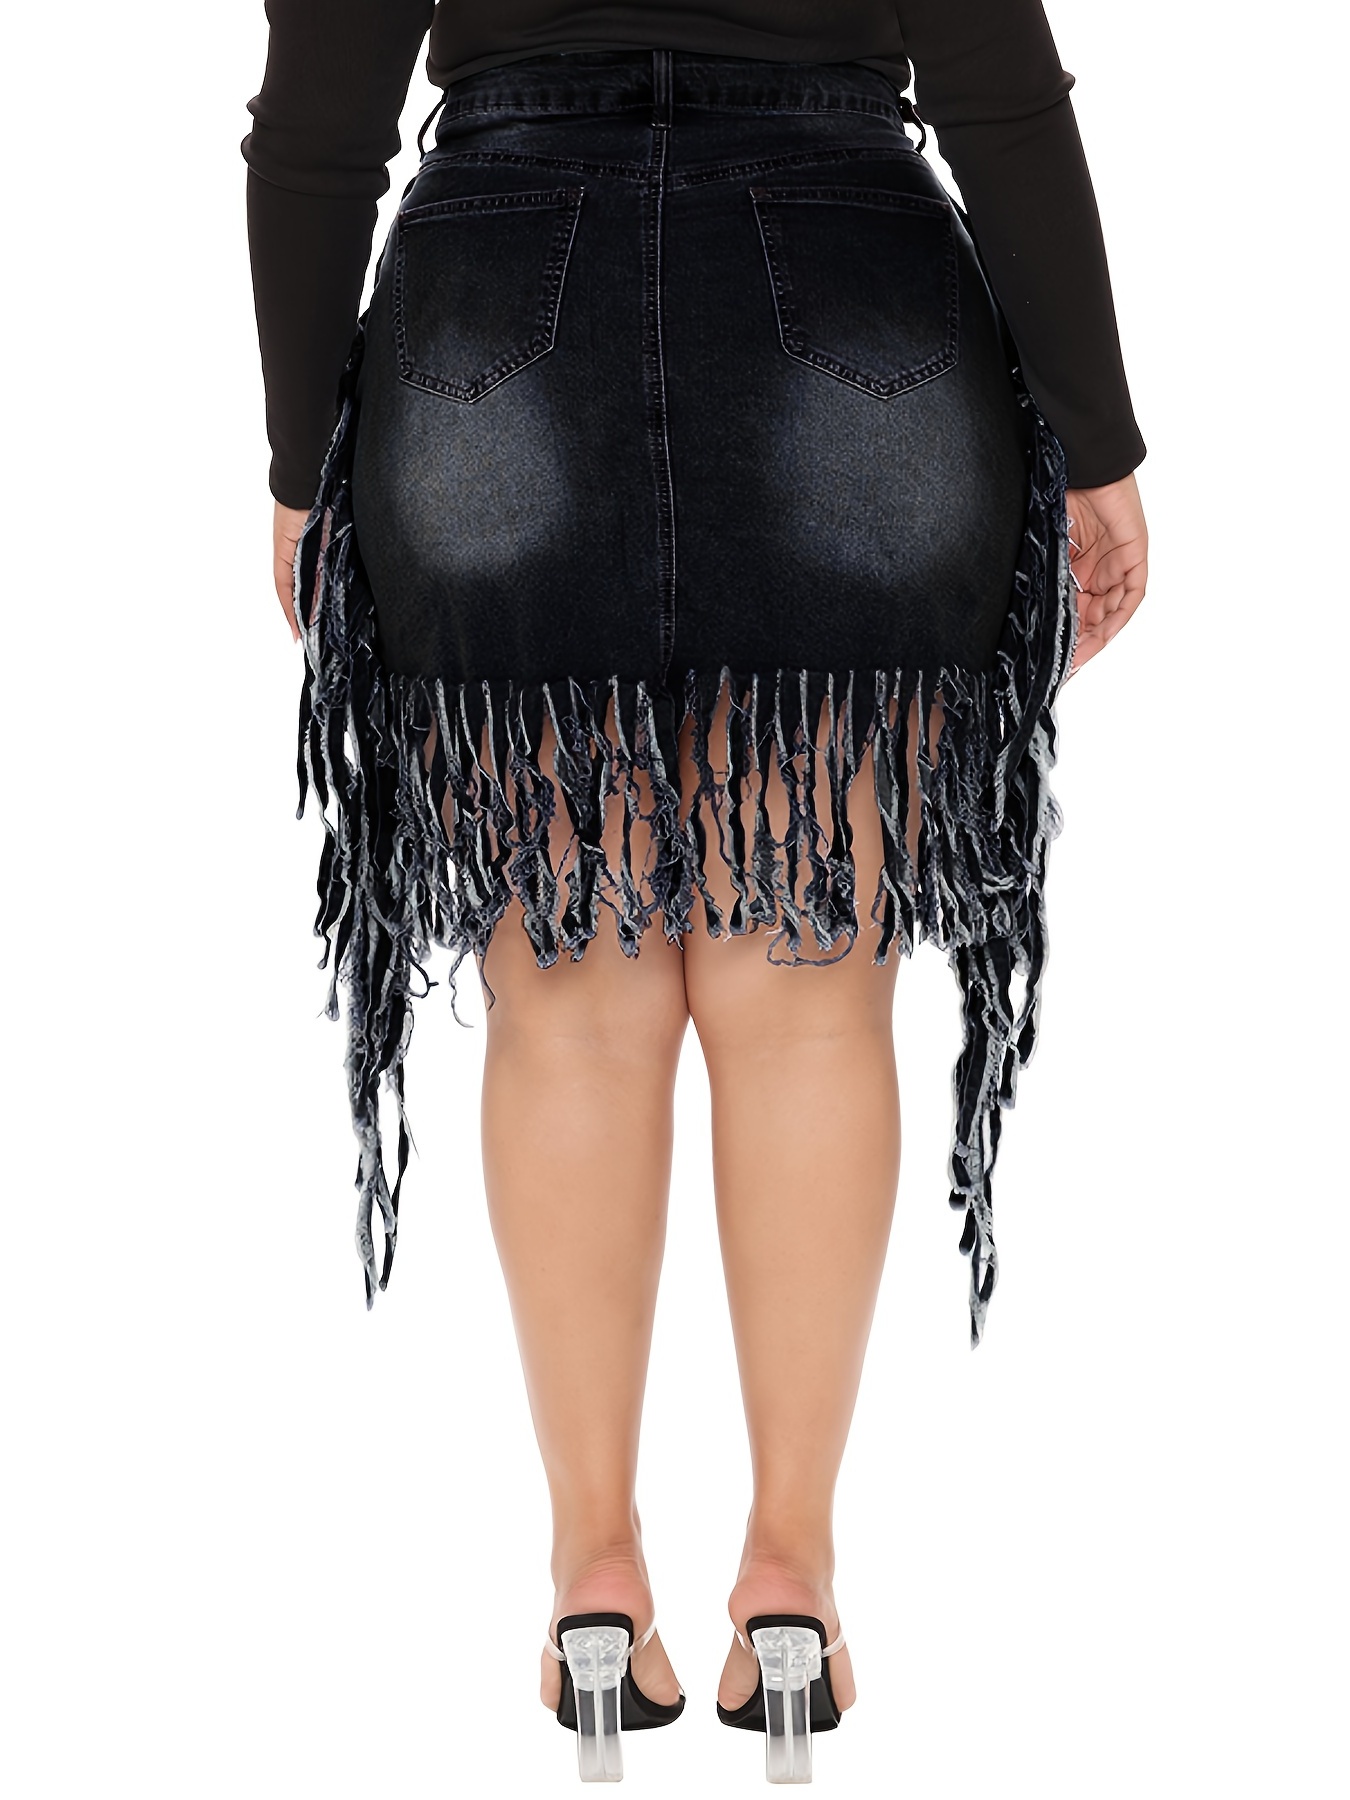 Sultry Black Fringe Denim Skirt – Big House Of Fashion